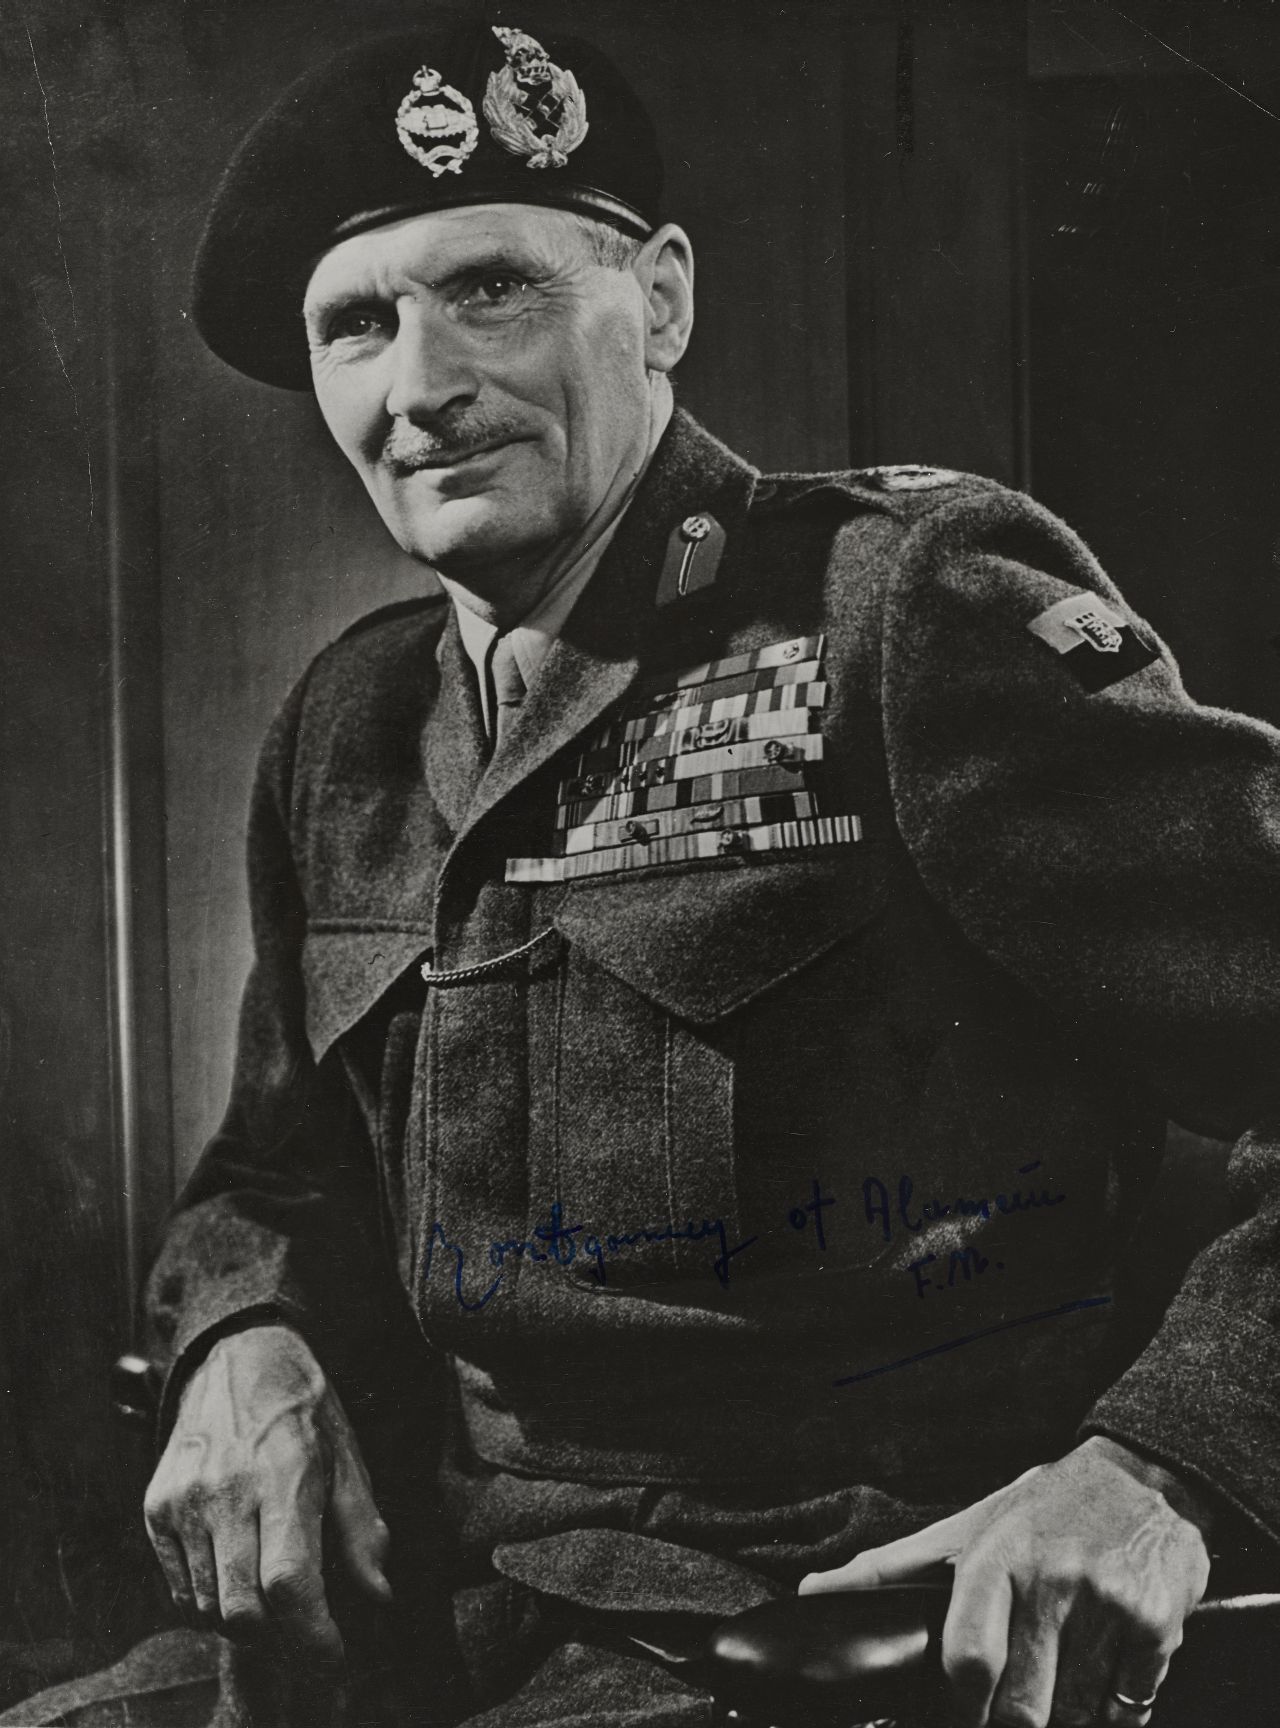 Porträtfoto von Feldmarschall Bernard L. Montgomery, Oberbefehlshaber der britischen Streitkräfte und Mitglied im Alliierten Kontrollrat, 1946-1951